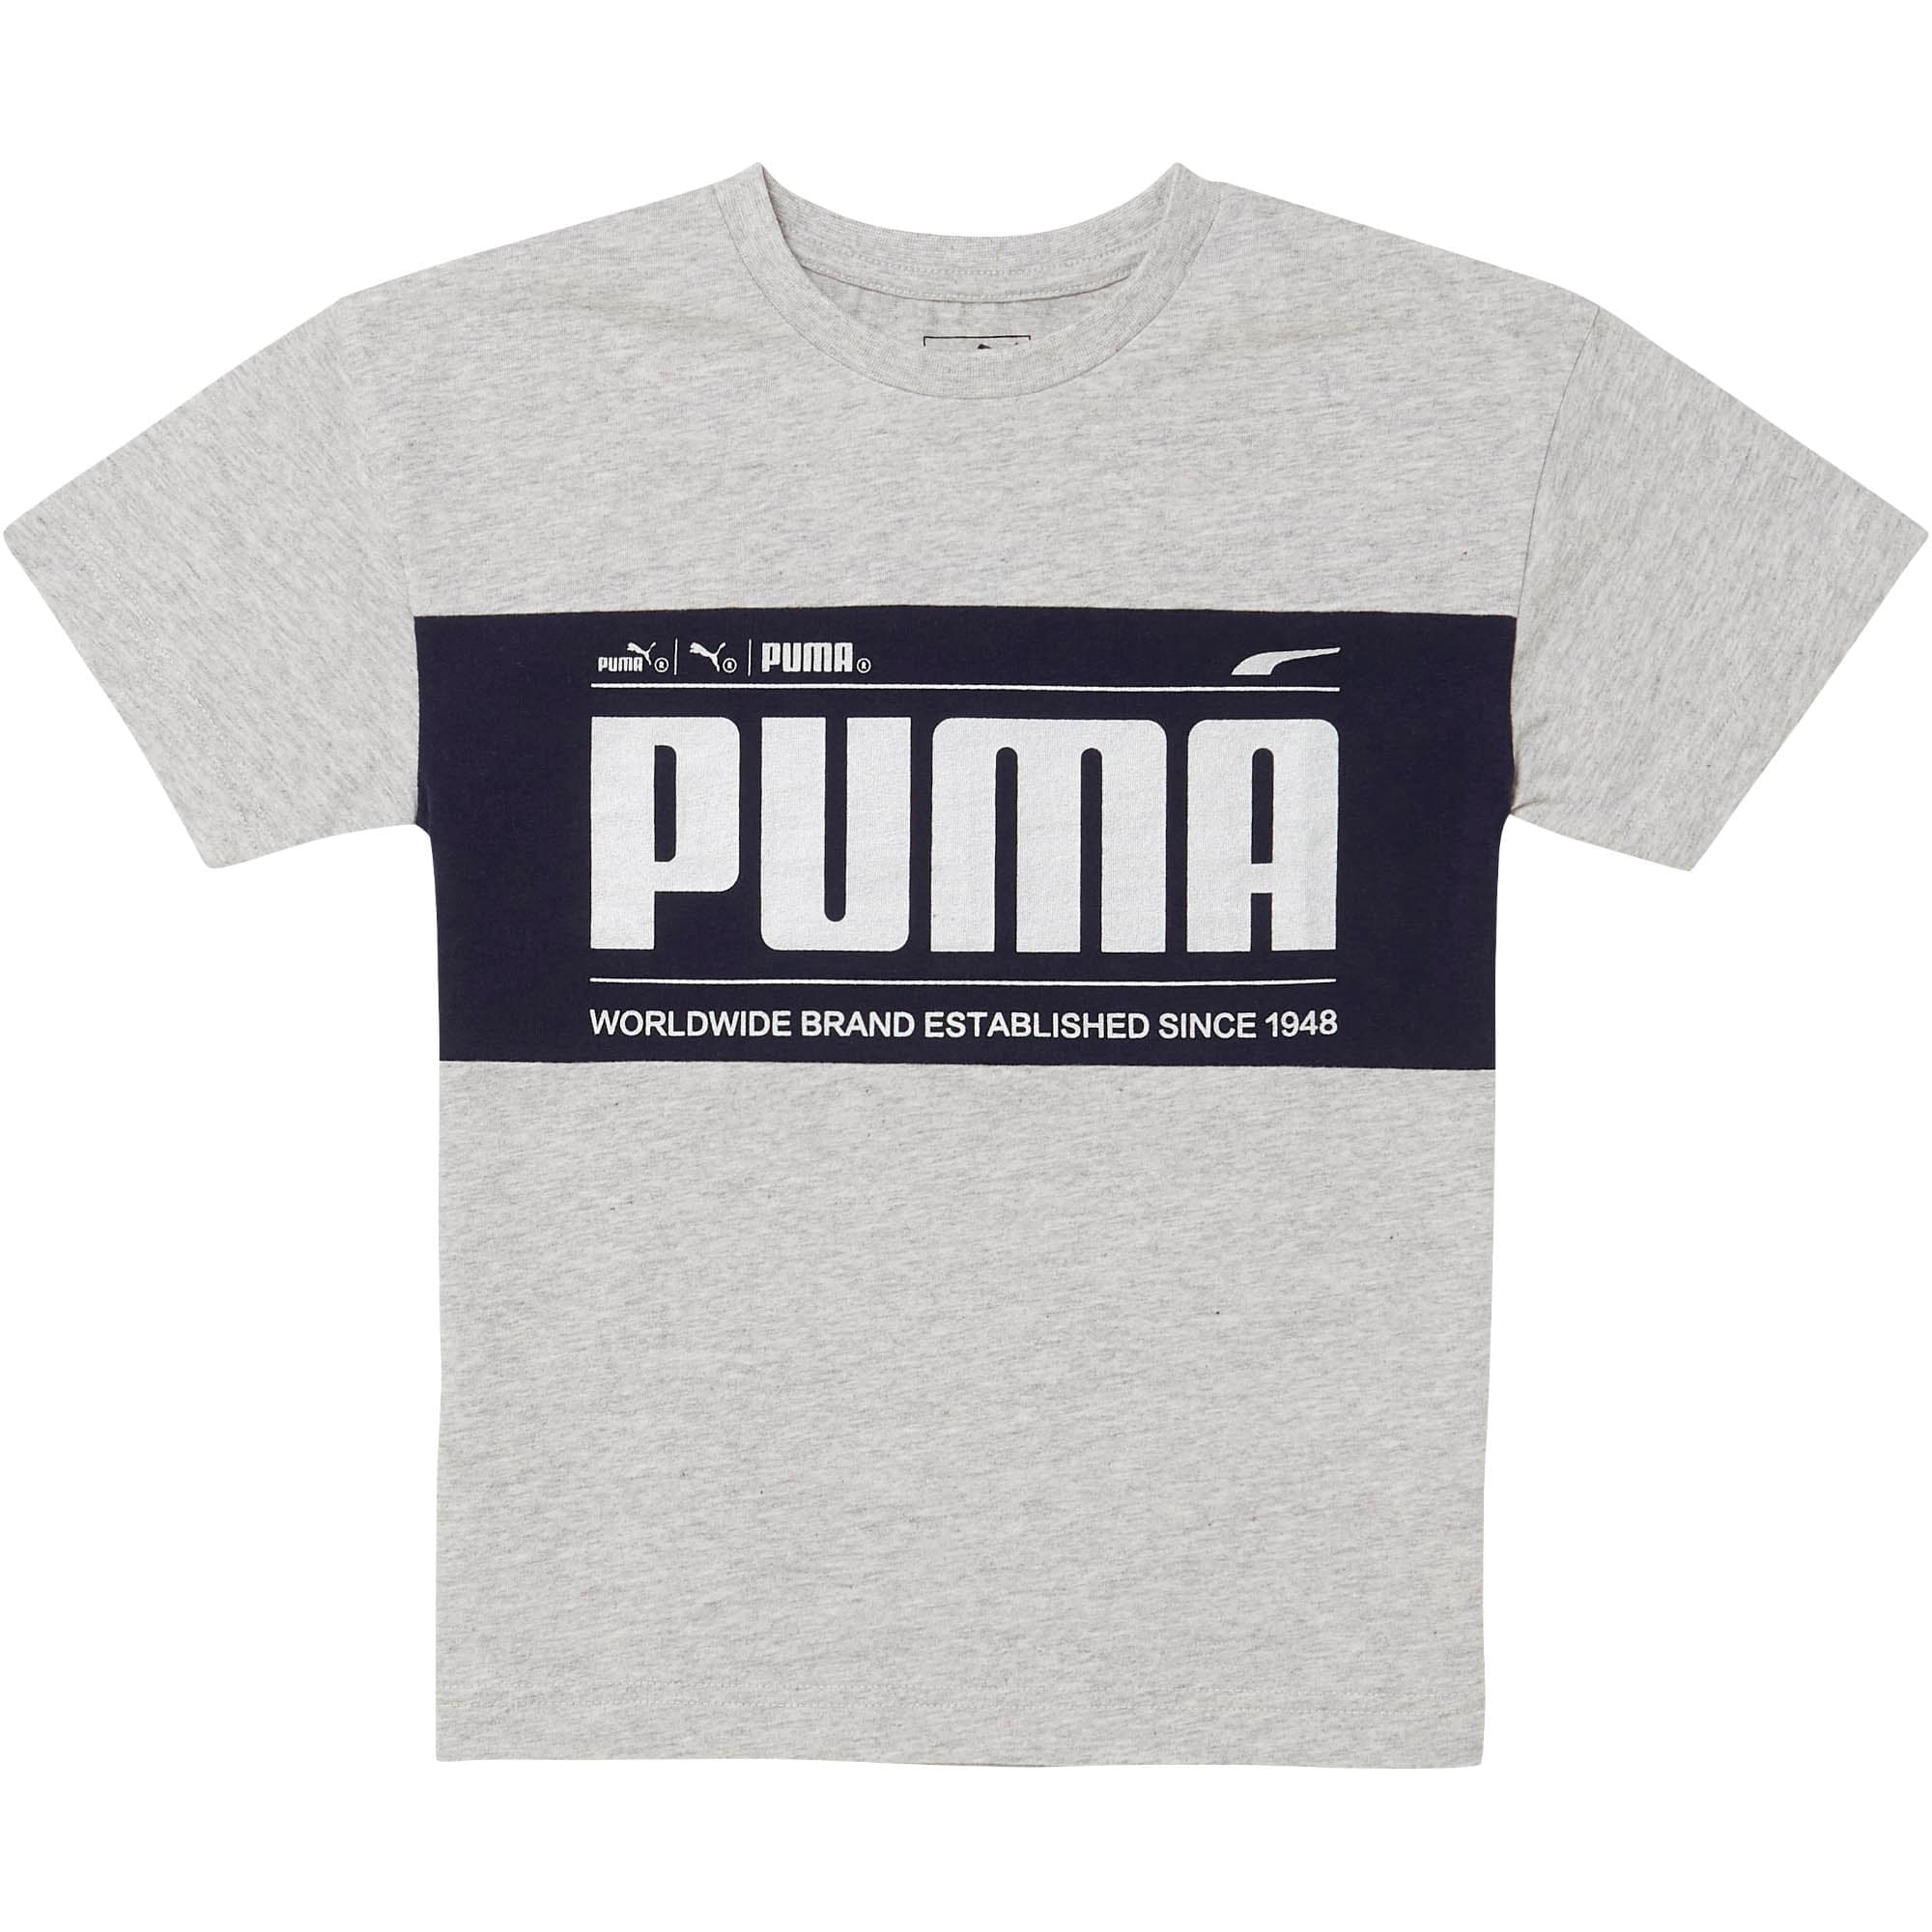 puma established 1948